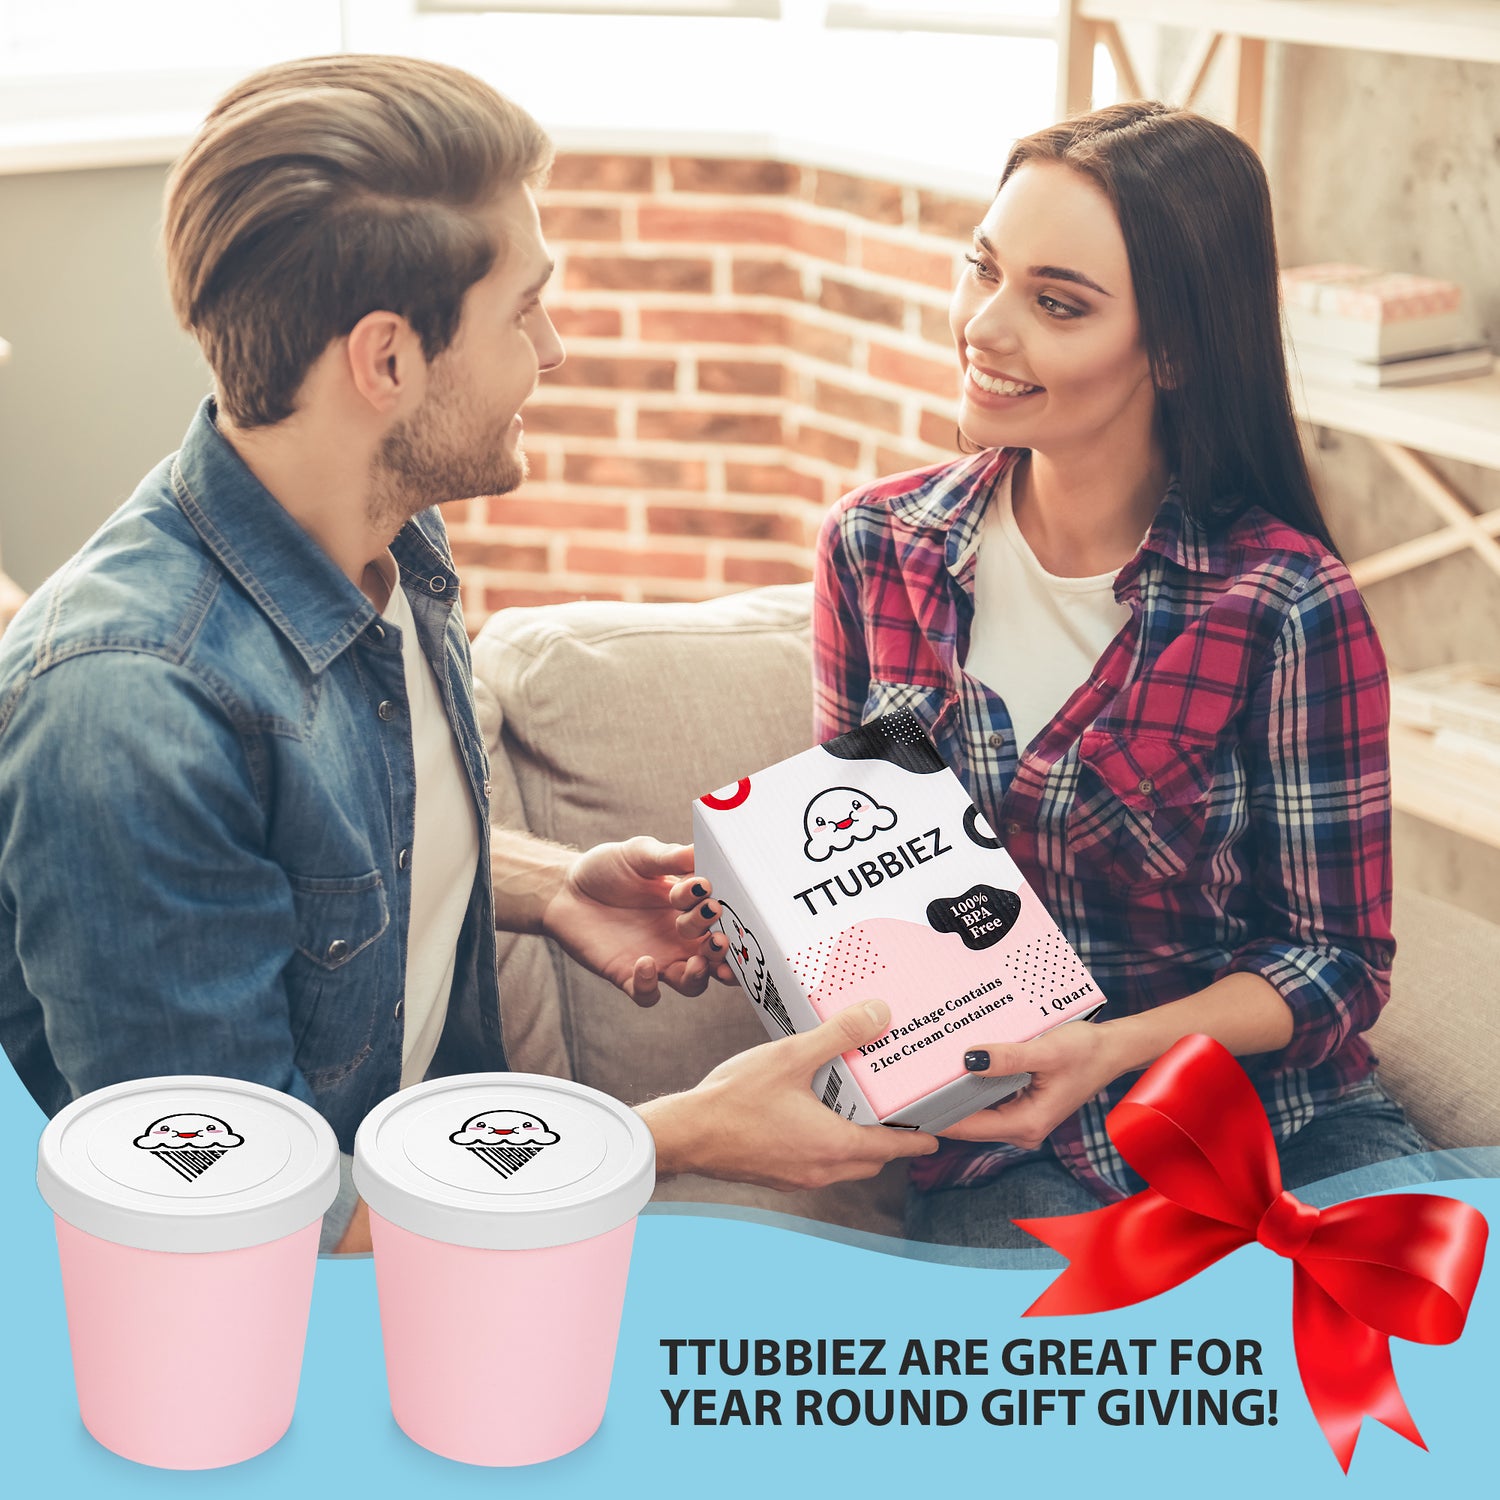 TTUBBIEZ  Reusable Ice Cream Containers